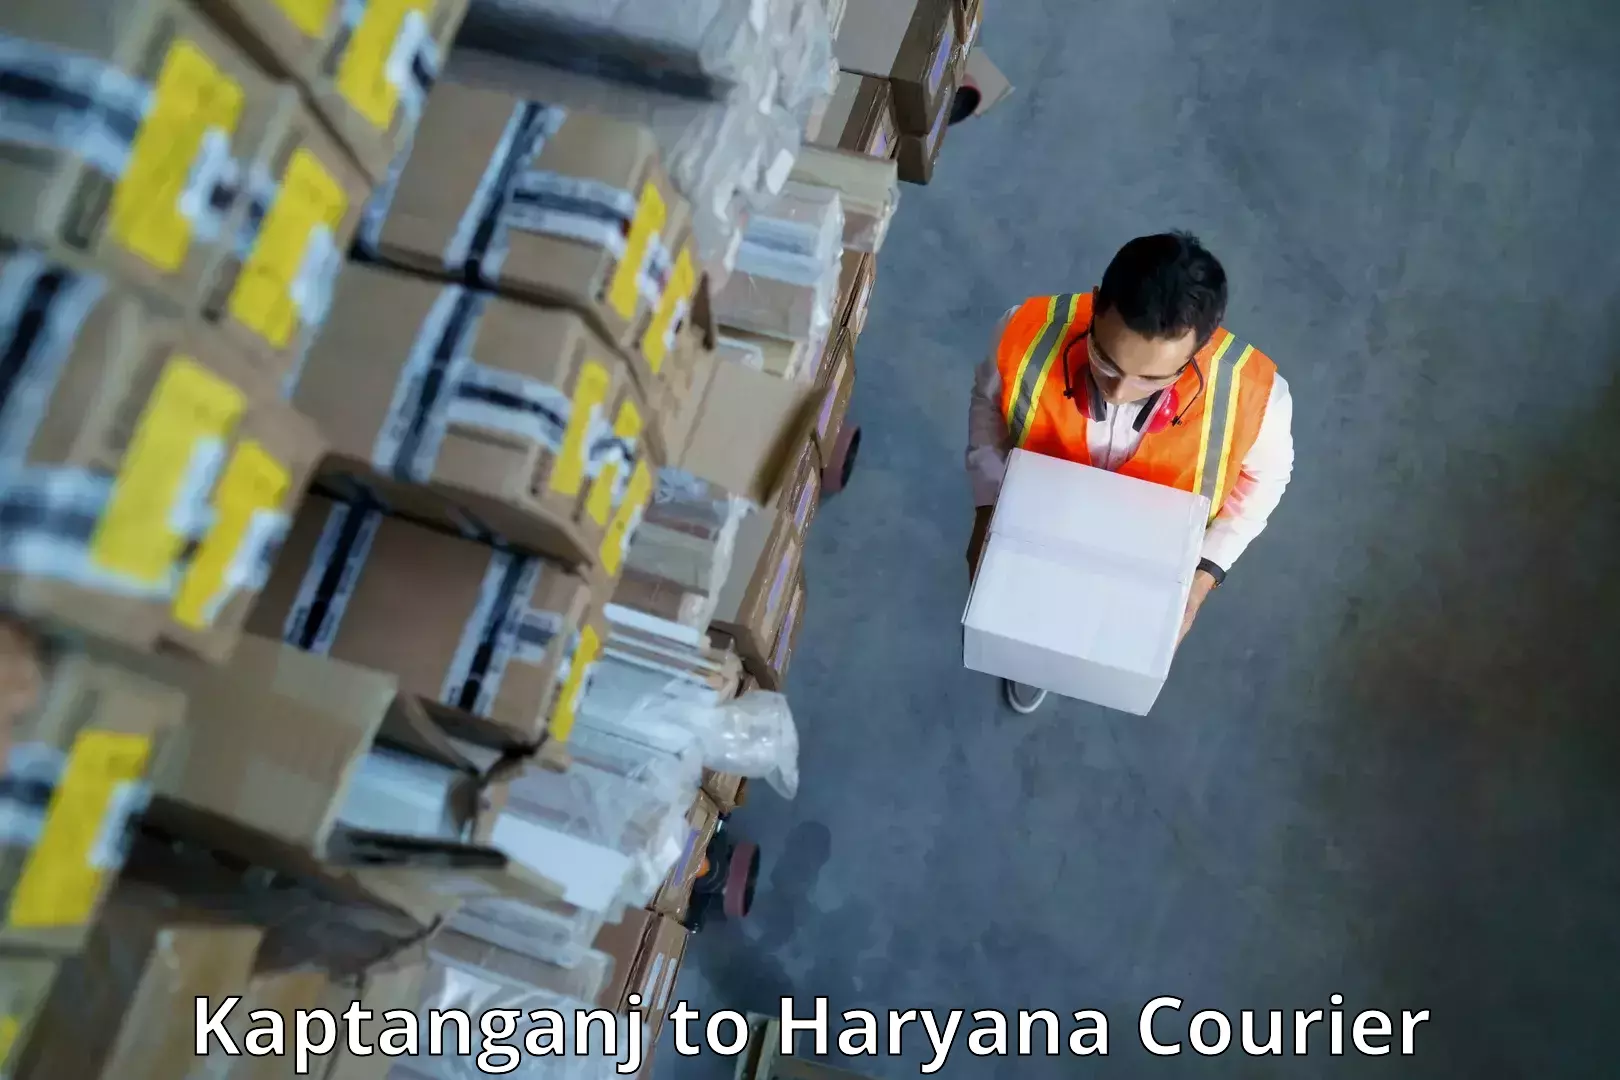 Next-generation courier services Kaptanganj to Chirya